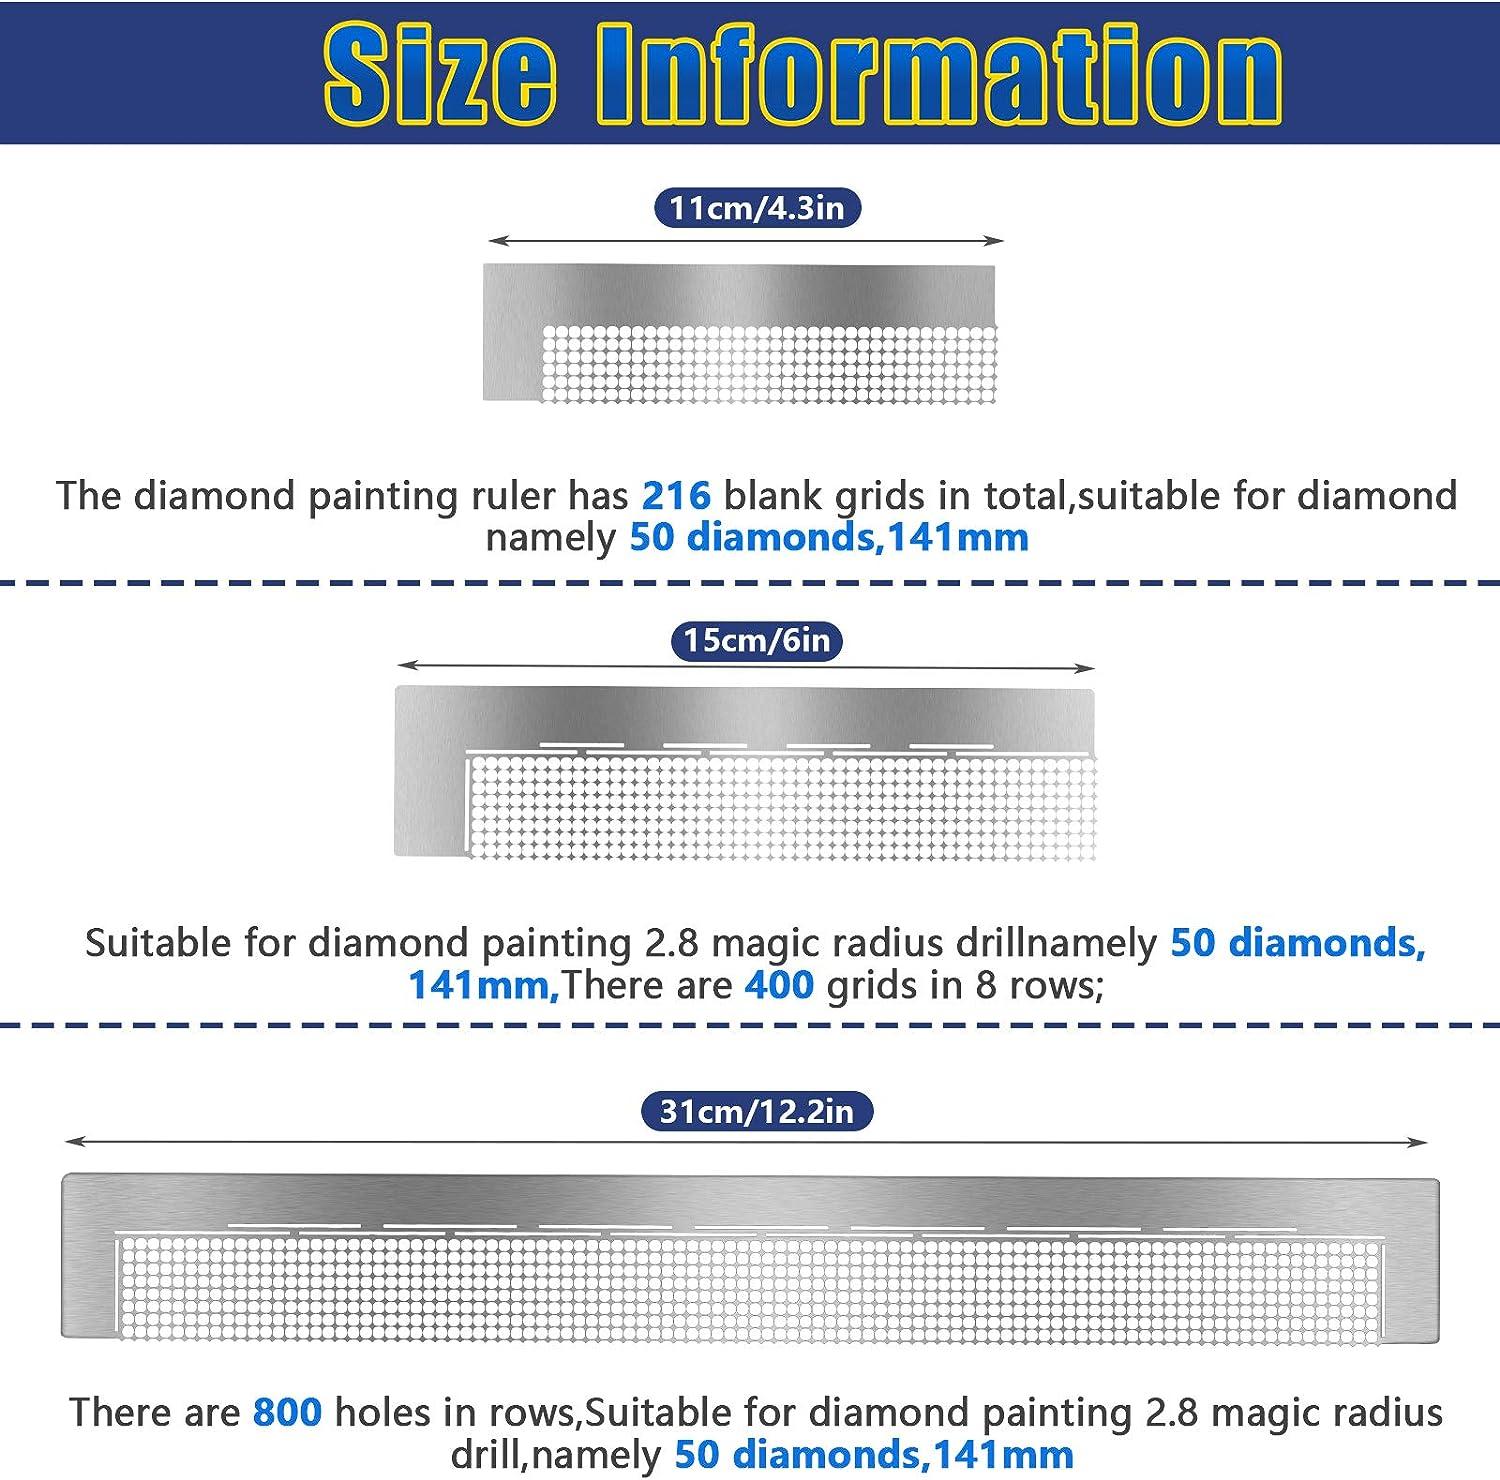 5D Diamond Painting Stainless Steel Diamond Painting Ruler